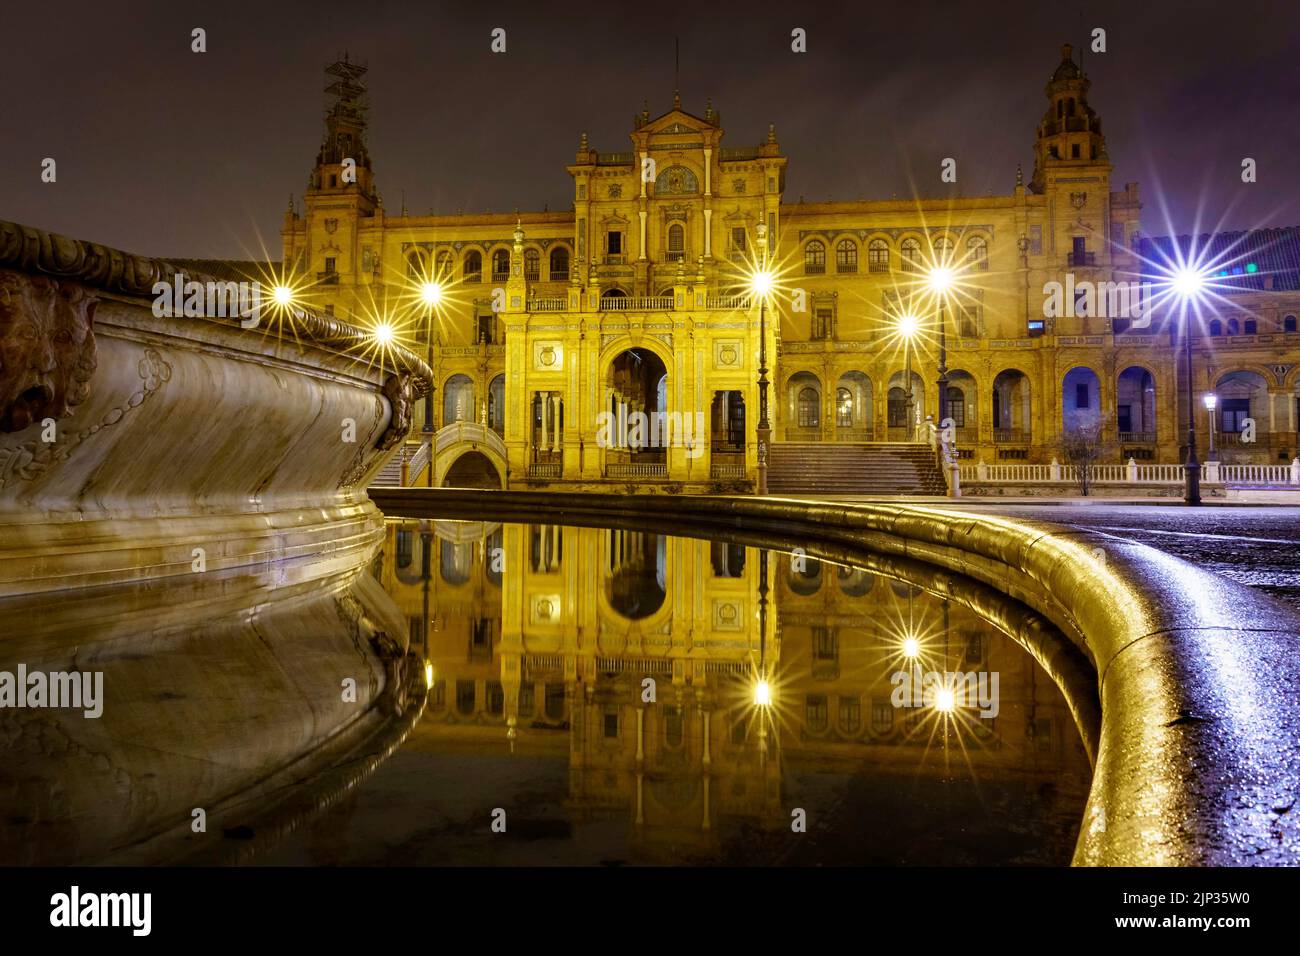 Plaza de España in Sevilla, Nachtszene nach Regen mit Langzeitbelichtung Foto und Reflexionen von Lichtern im Wasser und gepflasterten Straßen. Andalusien. Stockfoto